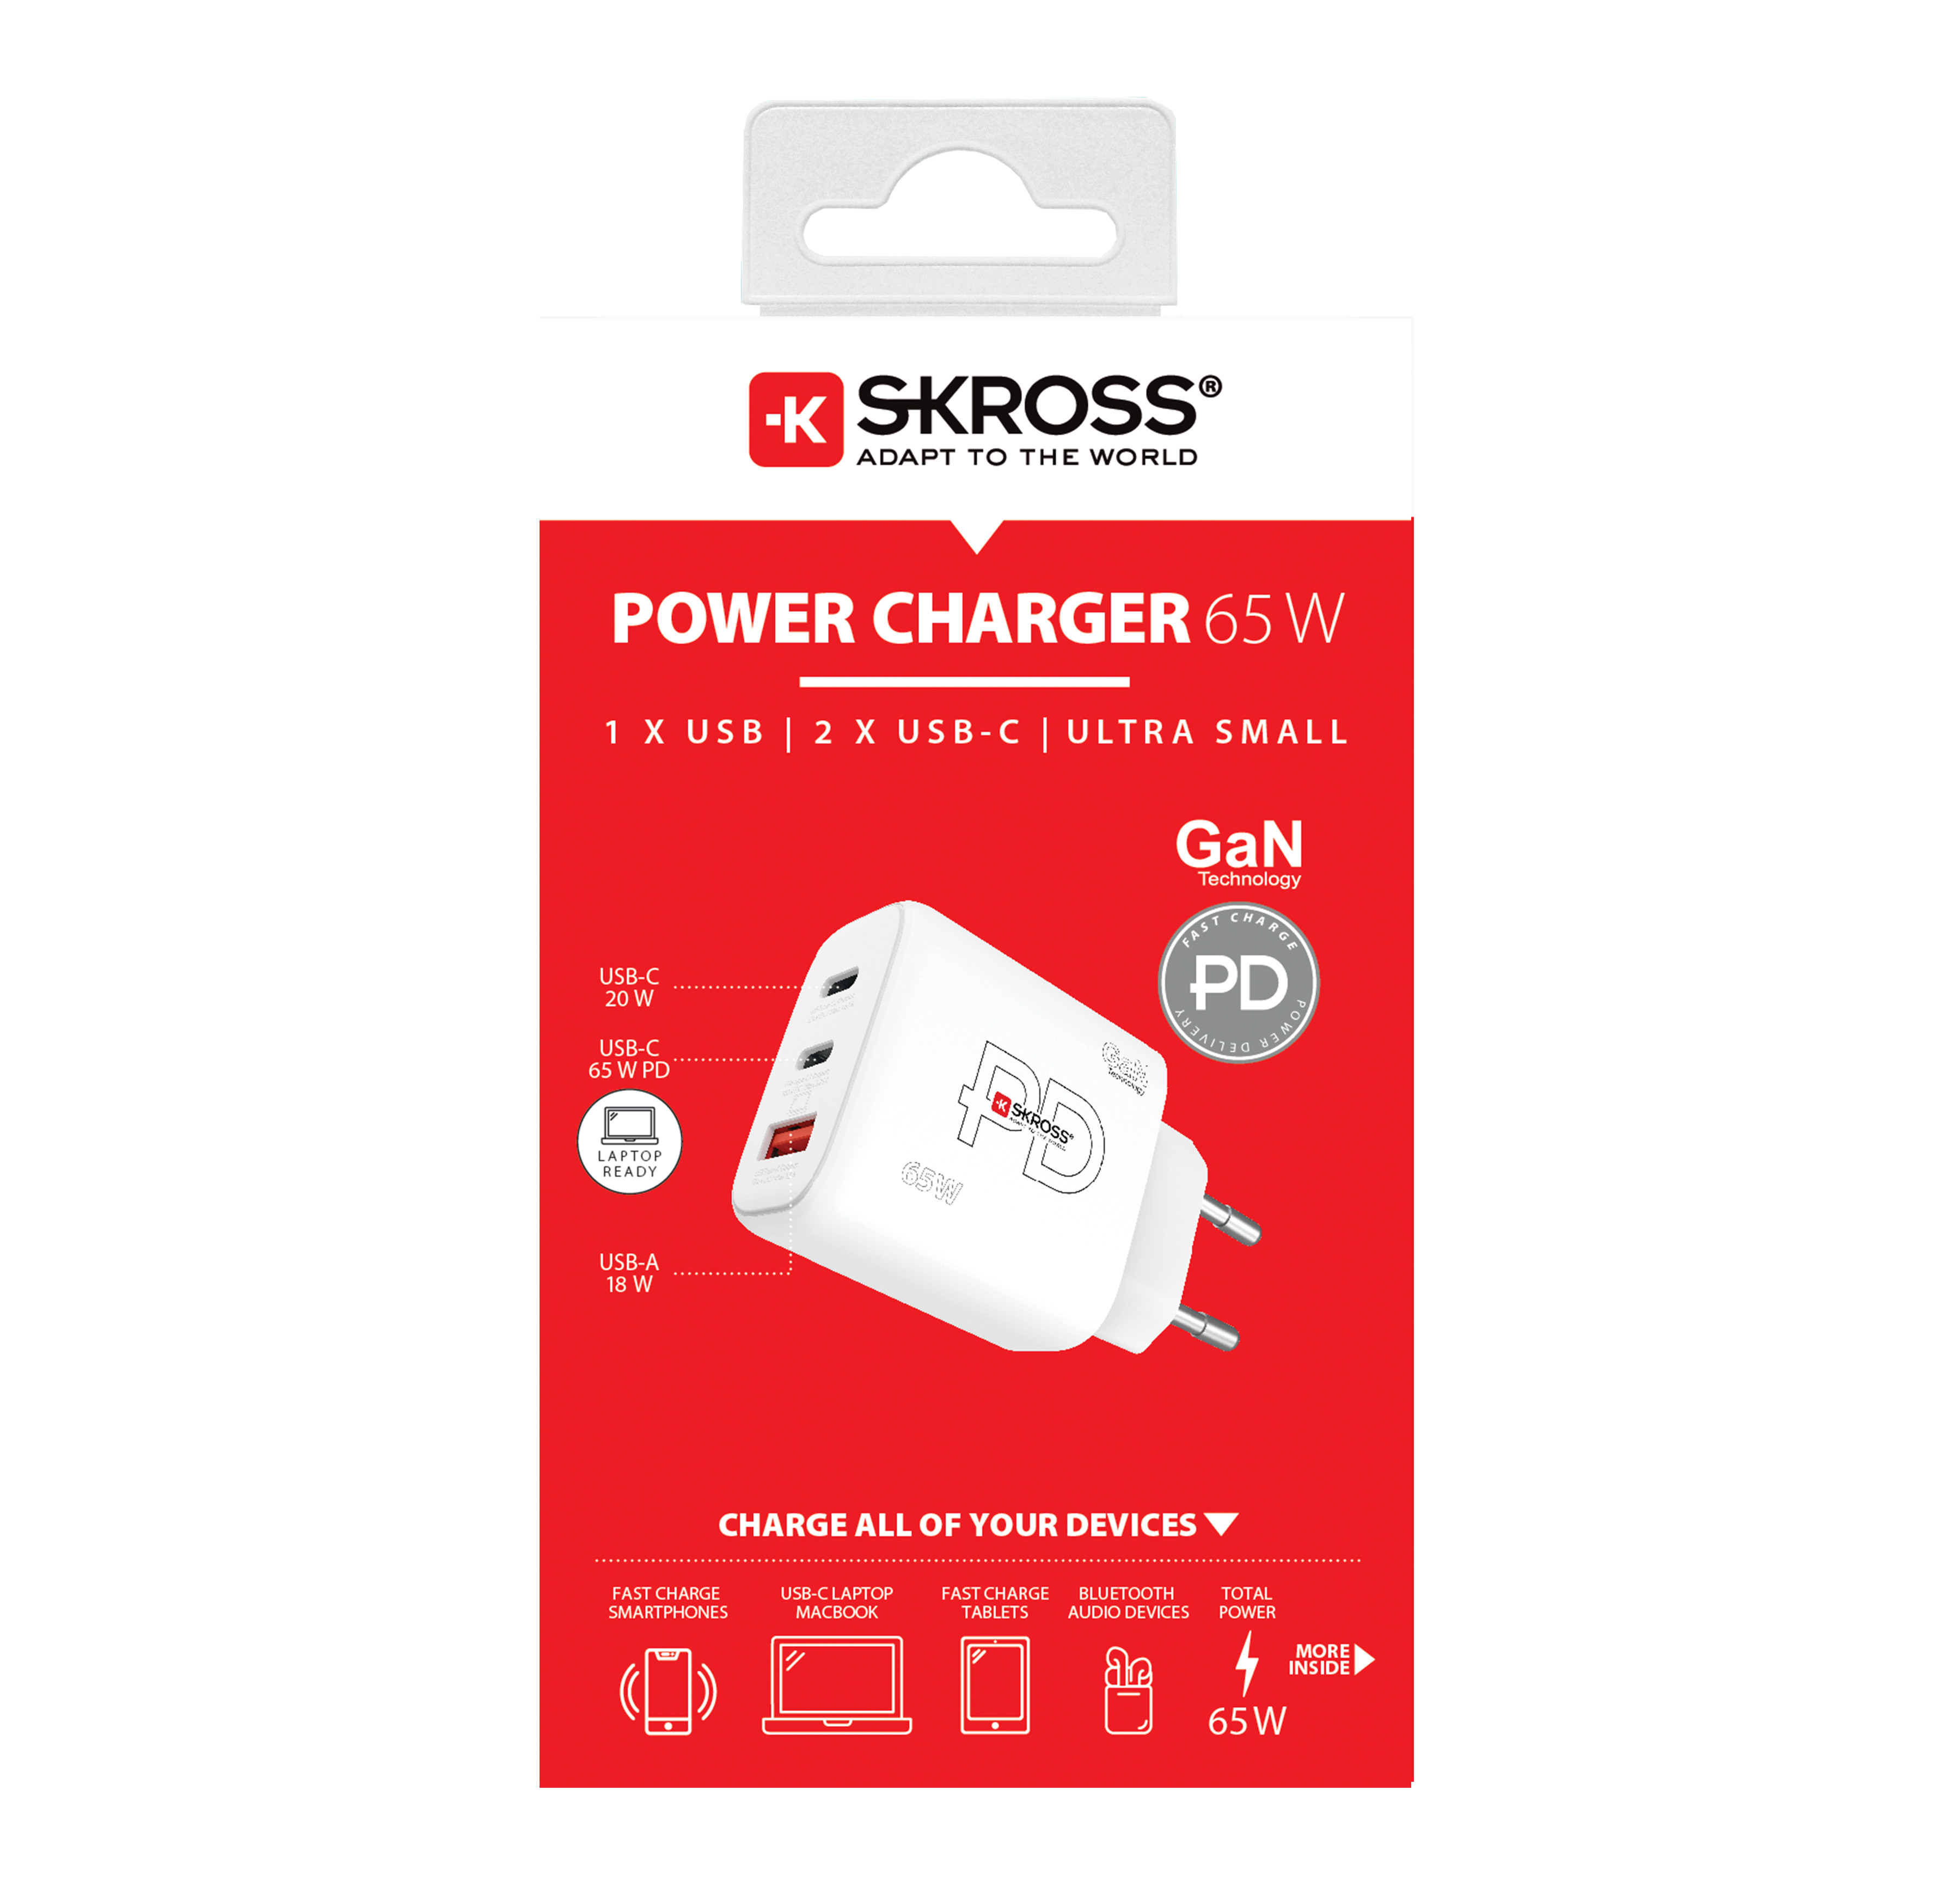 SKROSS Power Charger 65W GaN EU SKCH00116 2x USB C 1x USB A